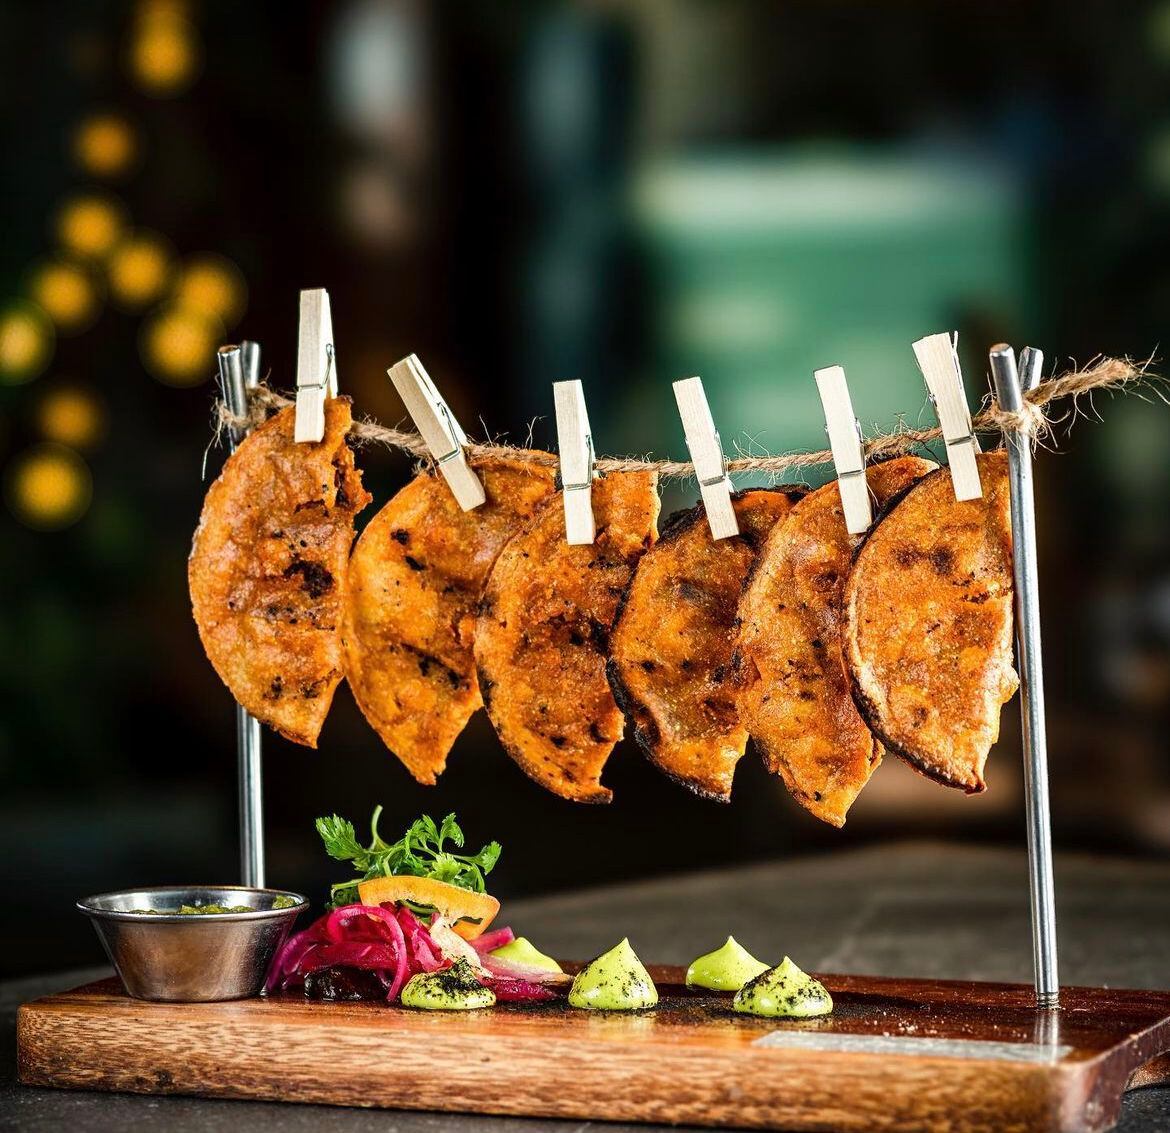 El restaurante de Porfirio's ofrece tacos en su menú. (Foto: Instagram / @porfiriosrestaurante)